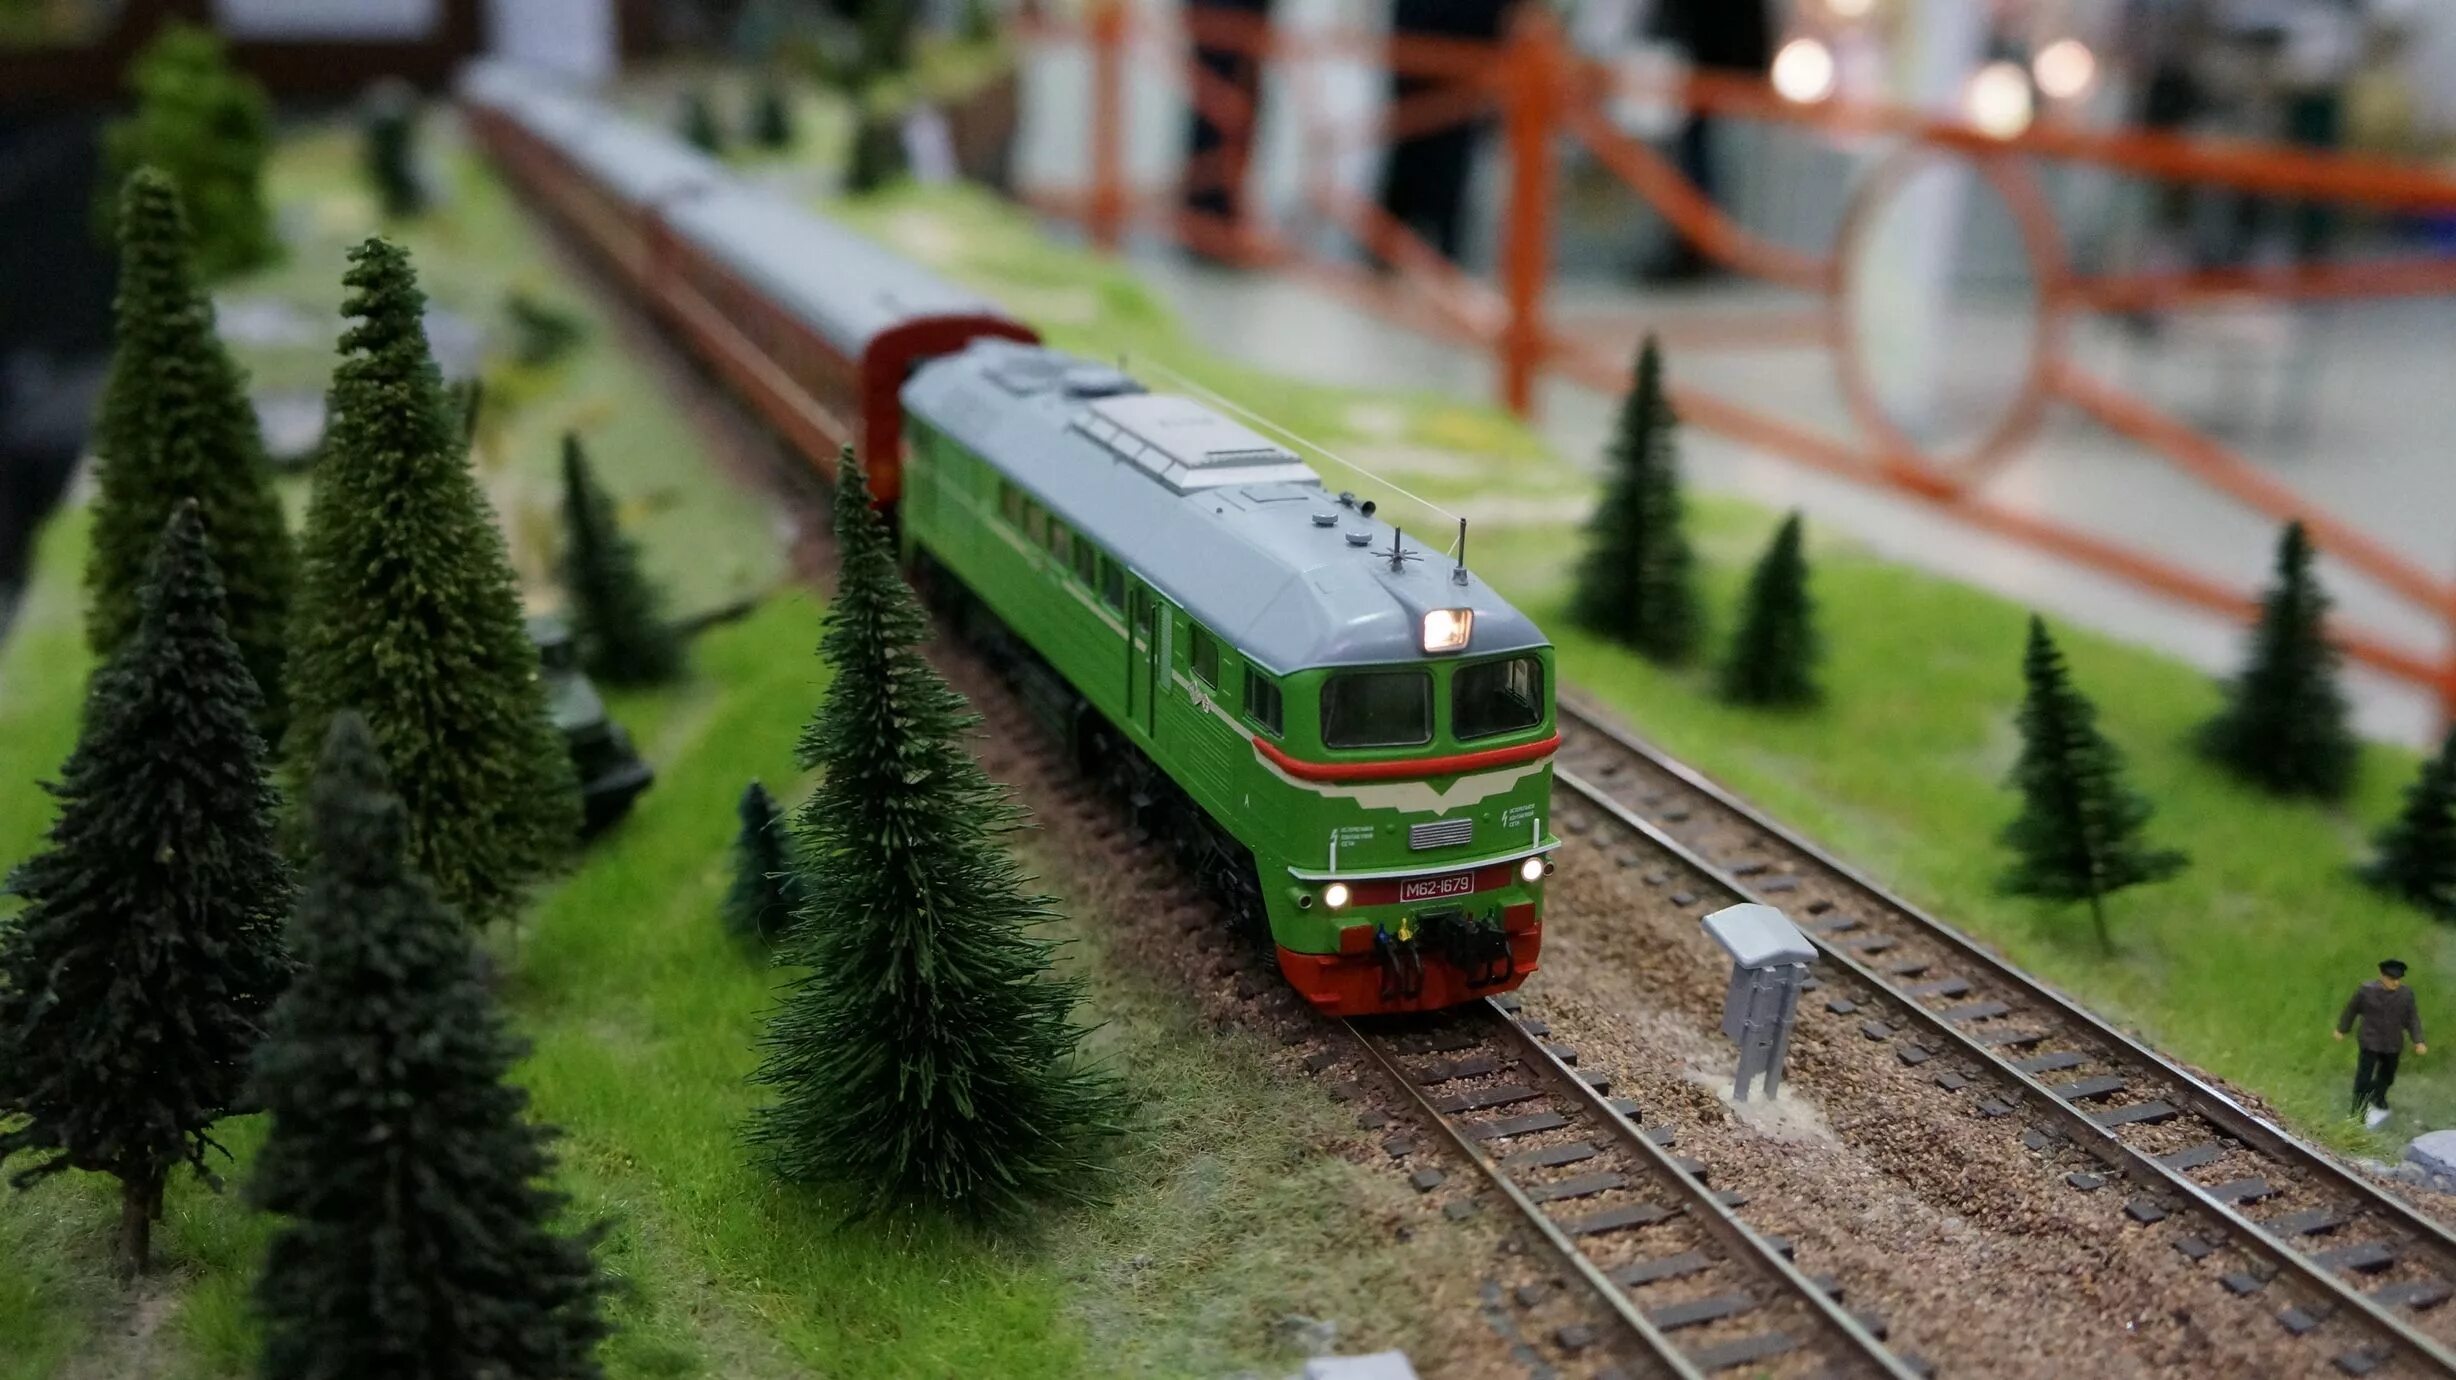 Tech Train 90127 модель железной дороги. Макет железной дороги. Макеты железных дорог. ЖД моделирование. Модели с железной дорогой